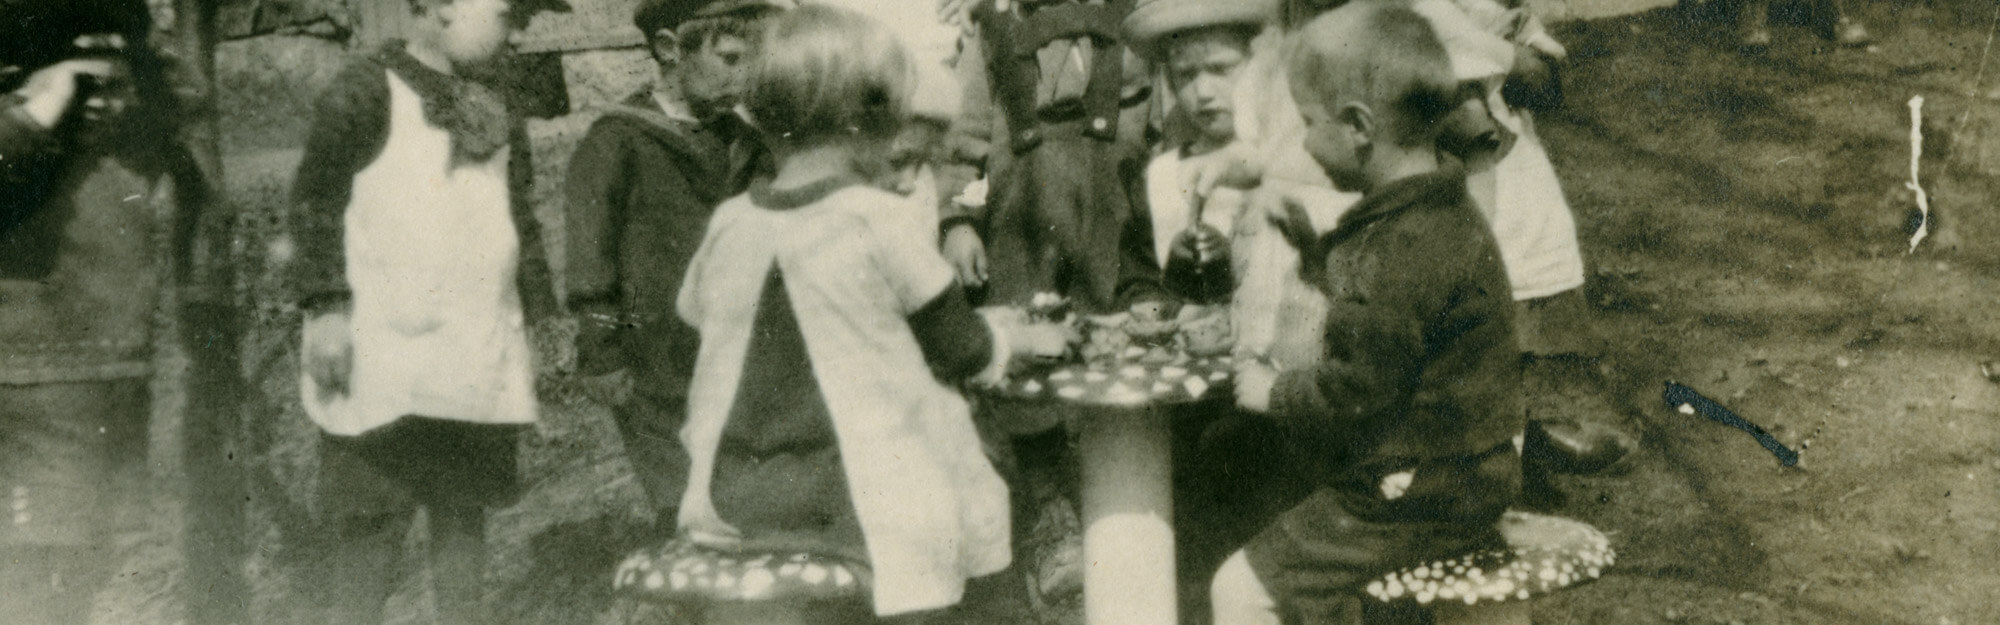 Lapsia leikkimässä kotileikkiä Ebeneserin pihalla leikkimökin edessä olevilla kärpässienituoleilla, 1925-1927. Lsatentarhamuseon valokuvakokoelma.